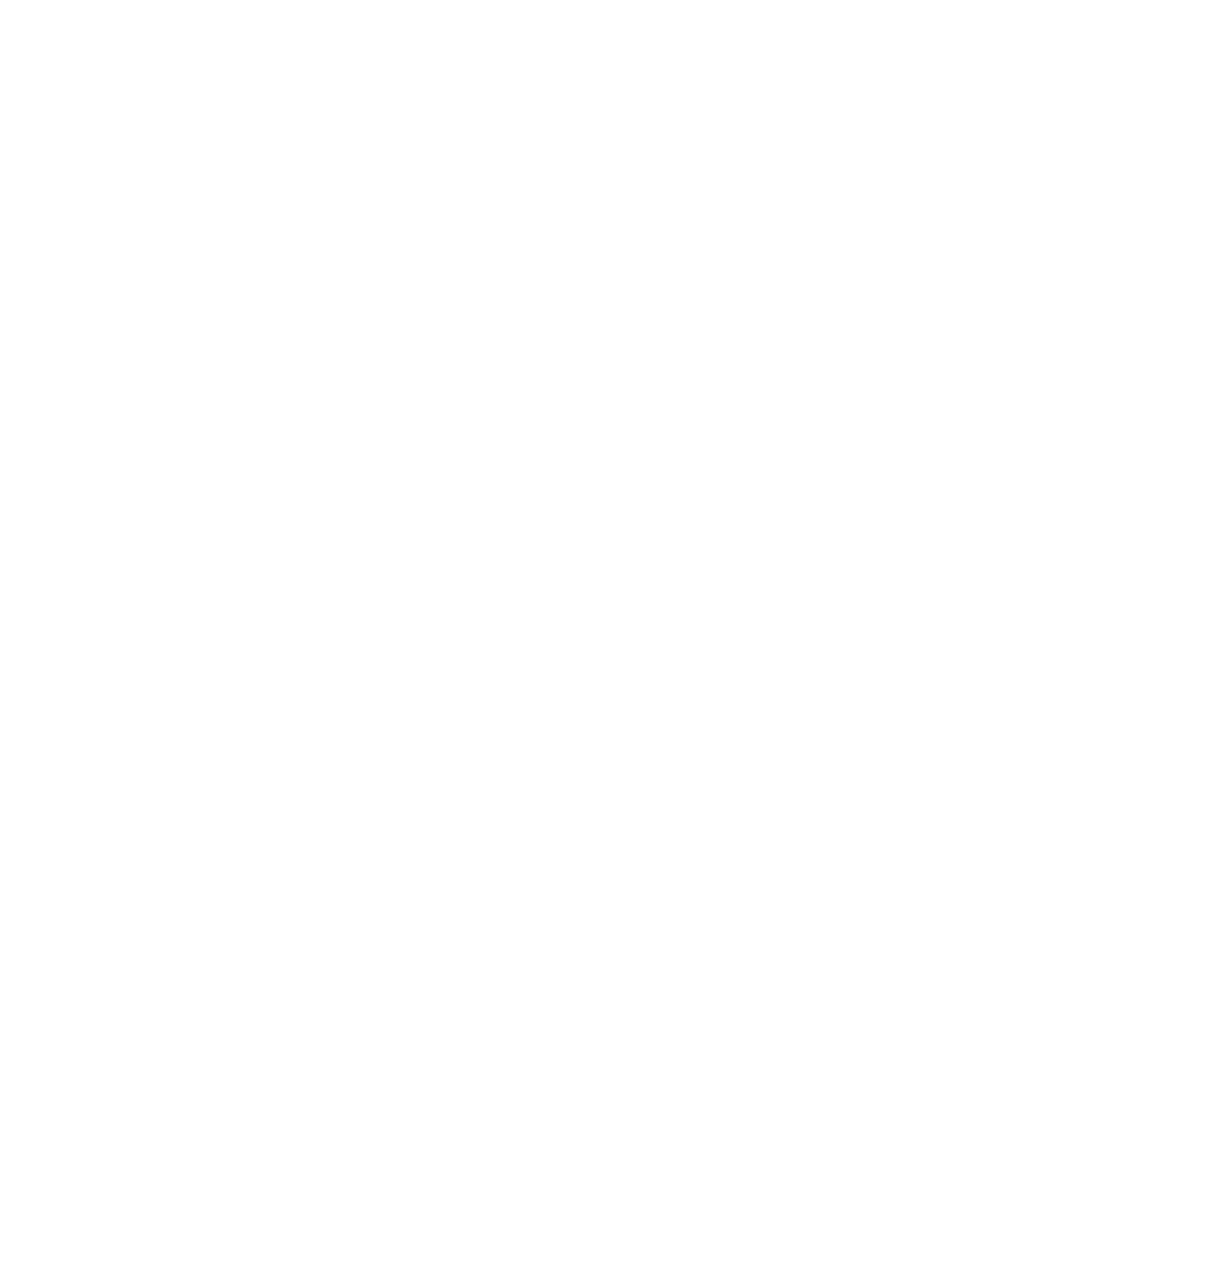 Dream Vacation Logo